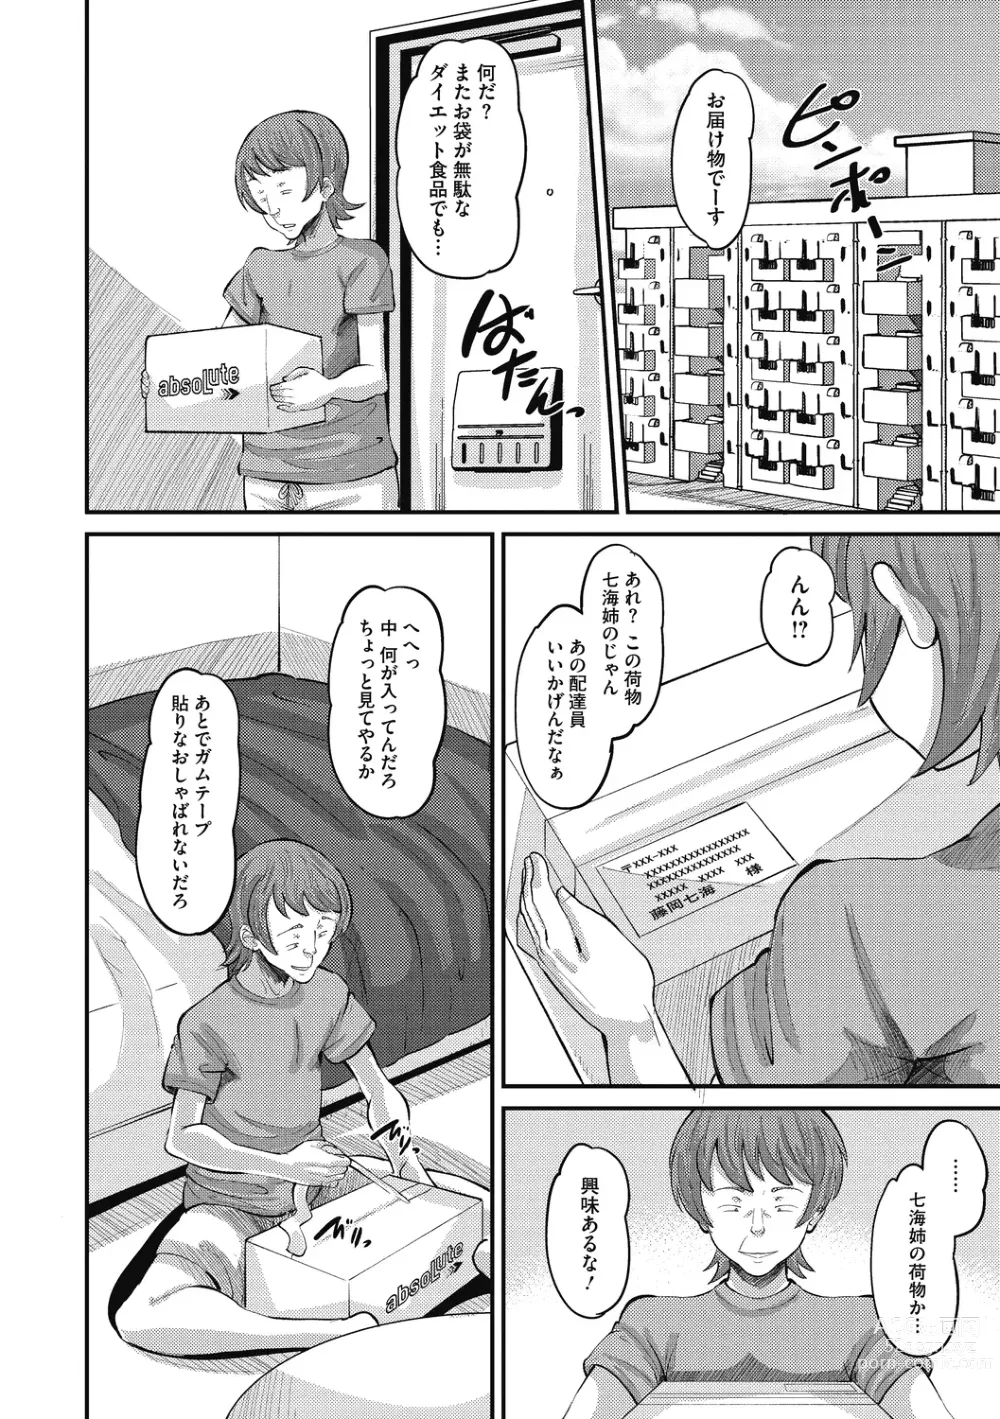 Page 12 of manga Soku Hame Kanojo Kareshi ni Zettai Naisho no Nakadashi Koibito Keiyaku